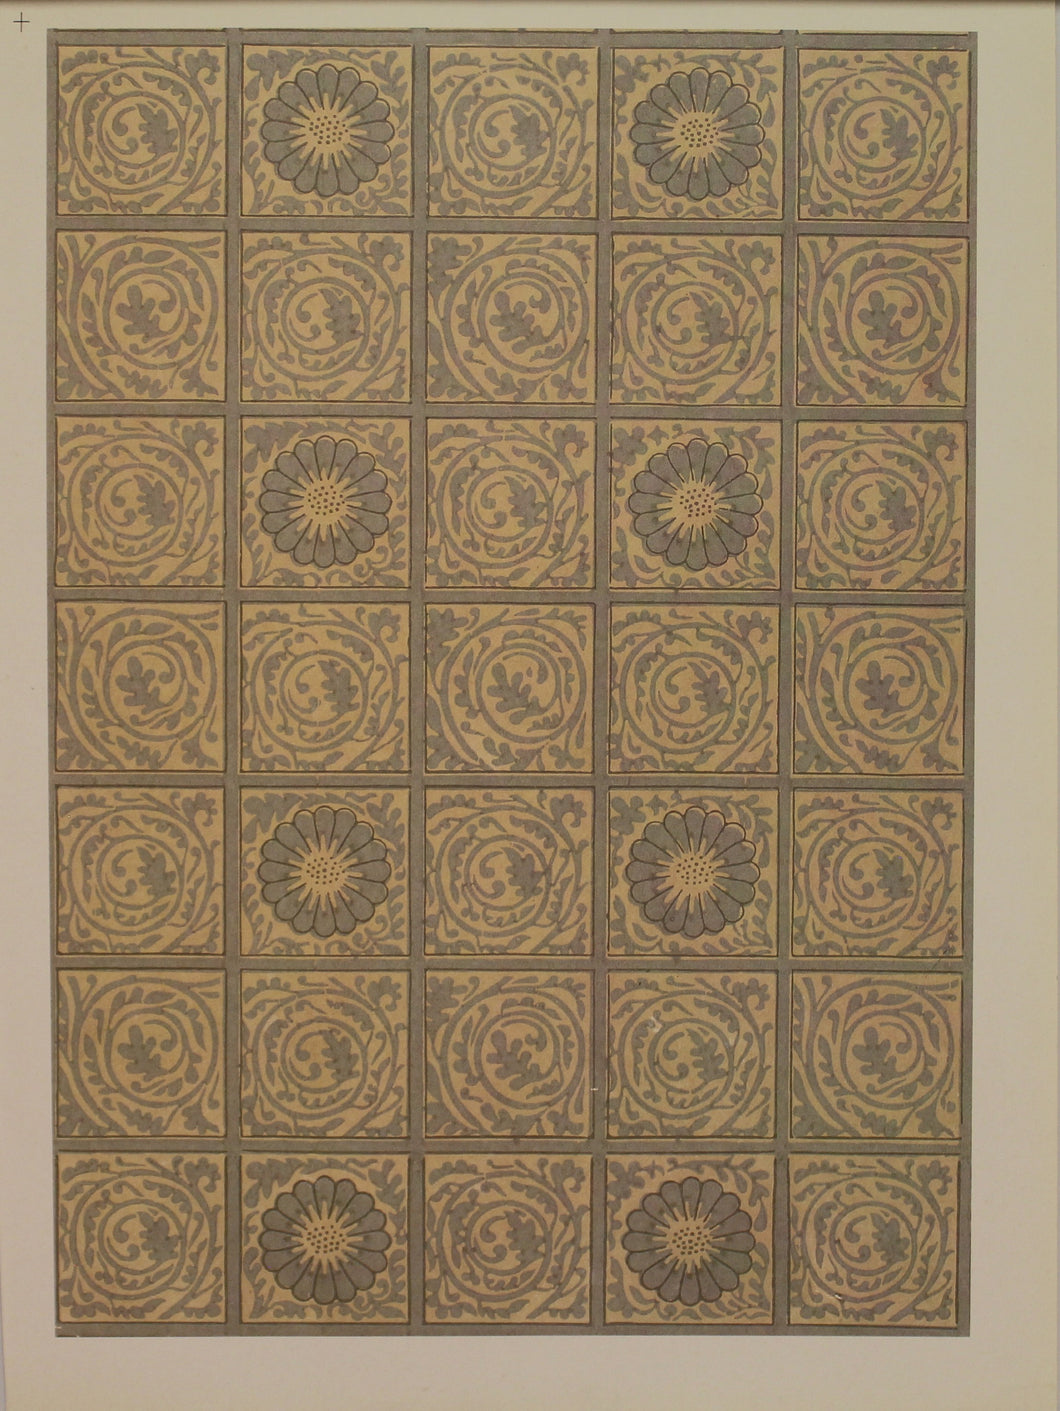 Decorator, Morris William, Wallpaper Design, Diaper, Plate 2, Art Nouveau, c1870